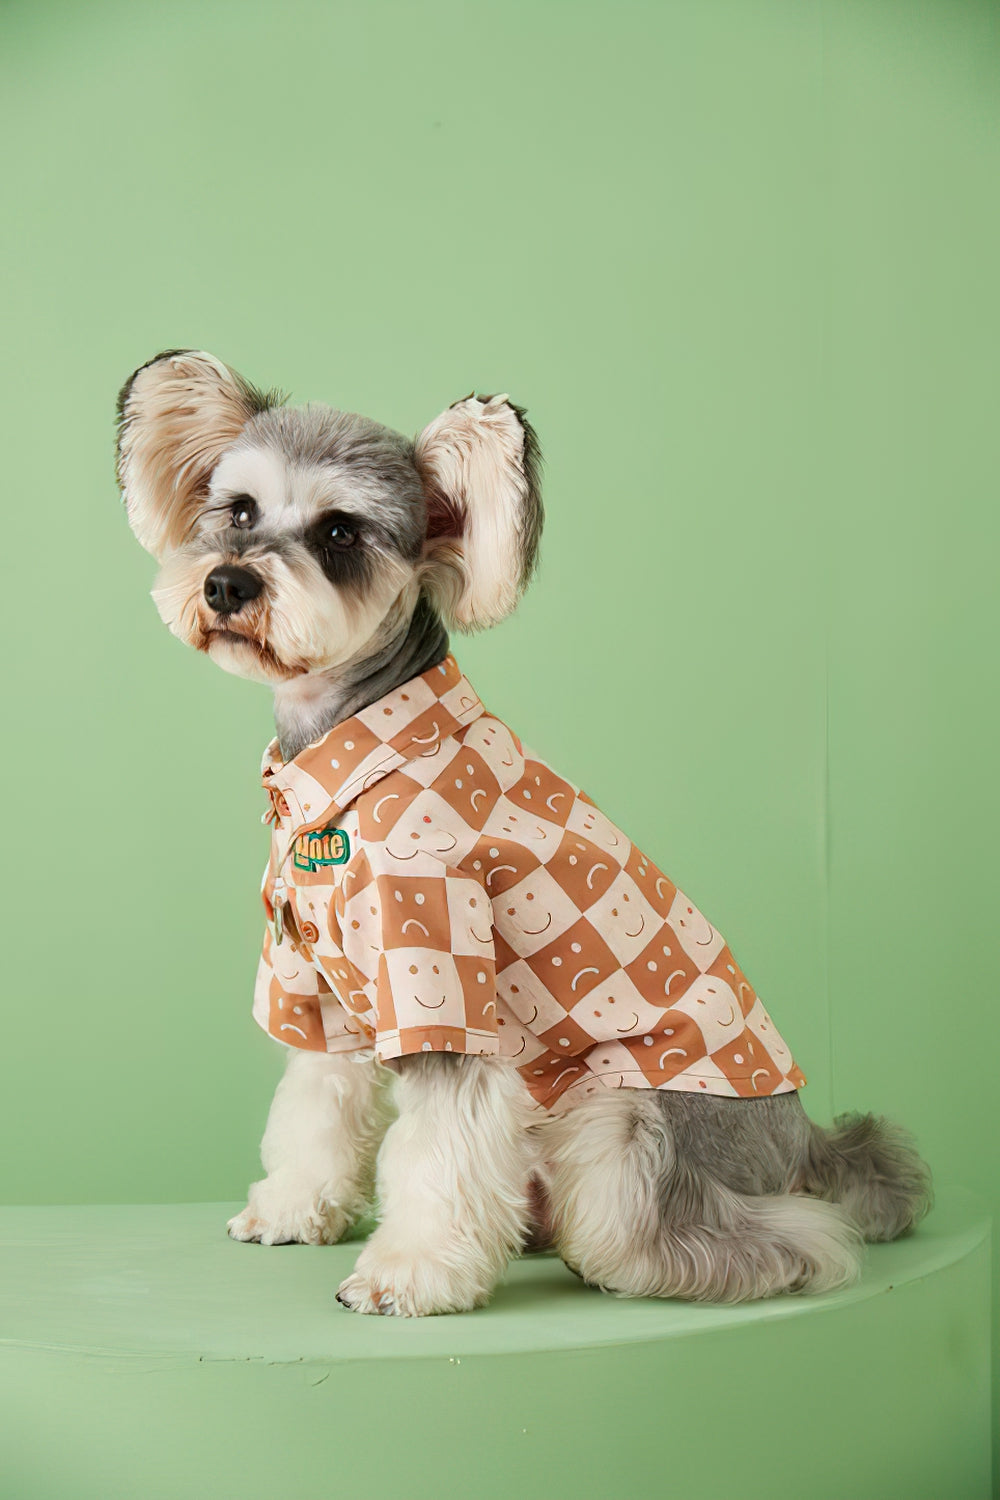 Mascota perro primavera y otoño delgada sonrisa perrito camisa perro ropa cachorro ropa